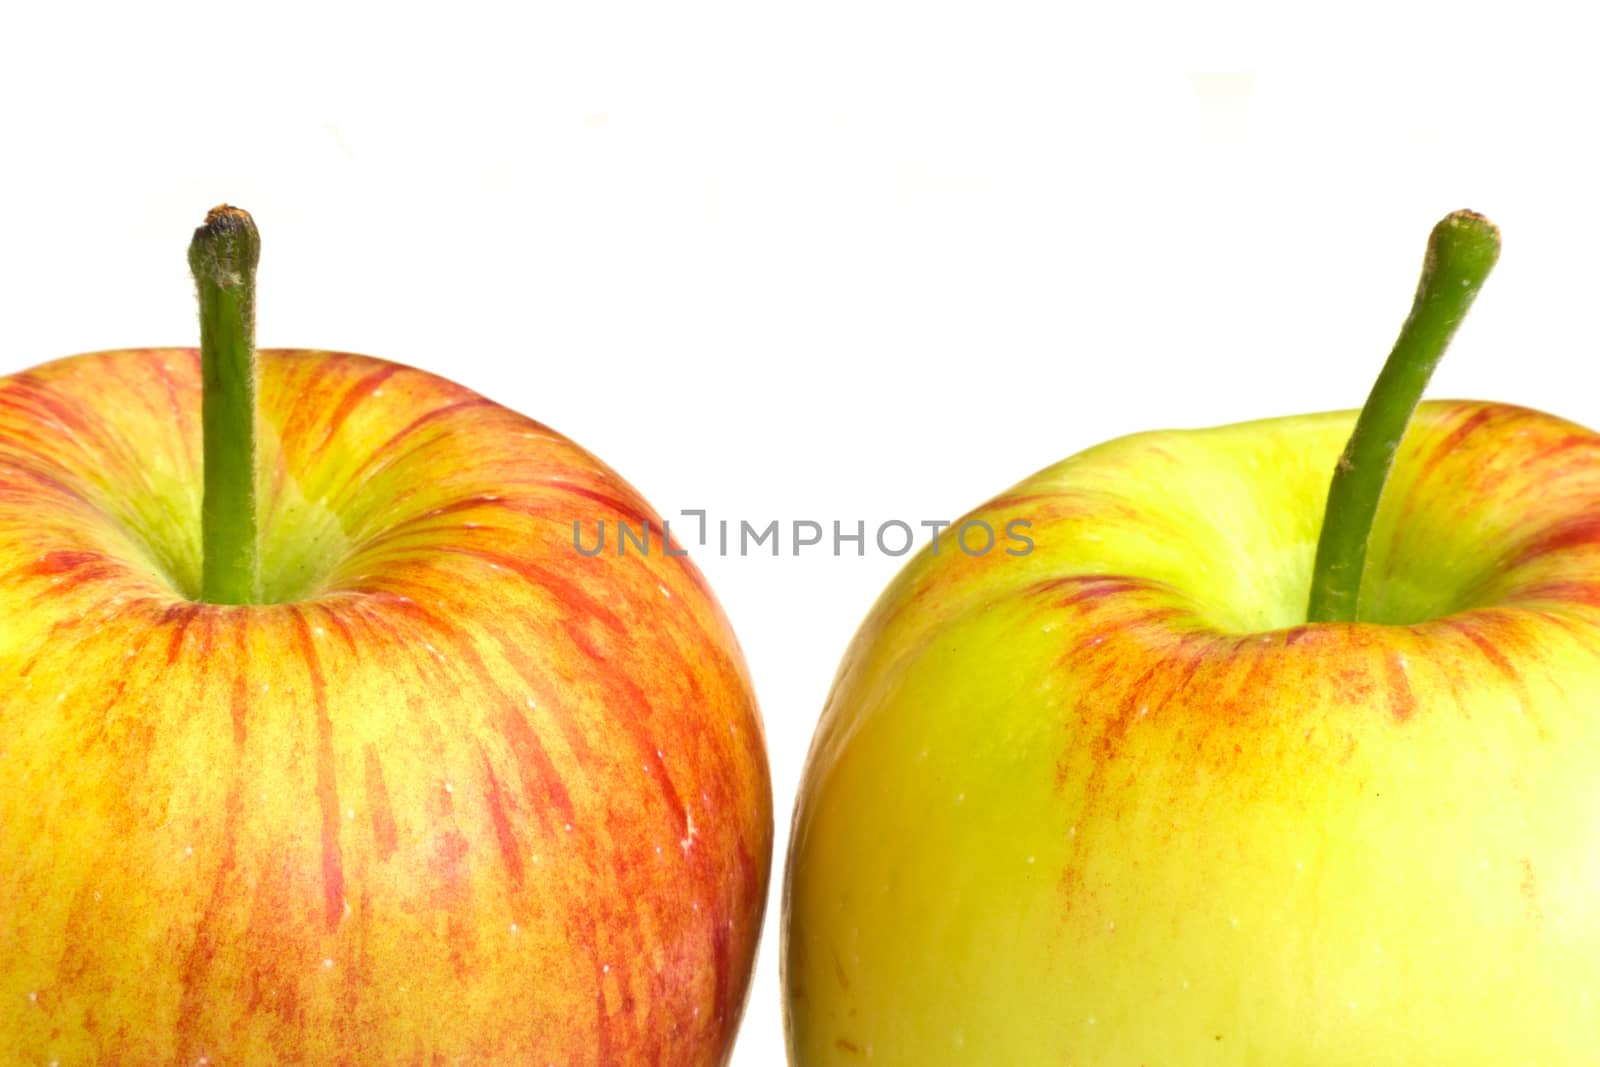 Apples by Kidza